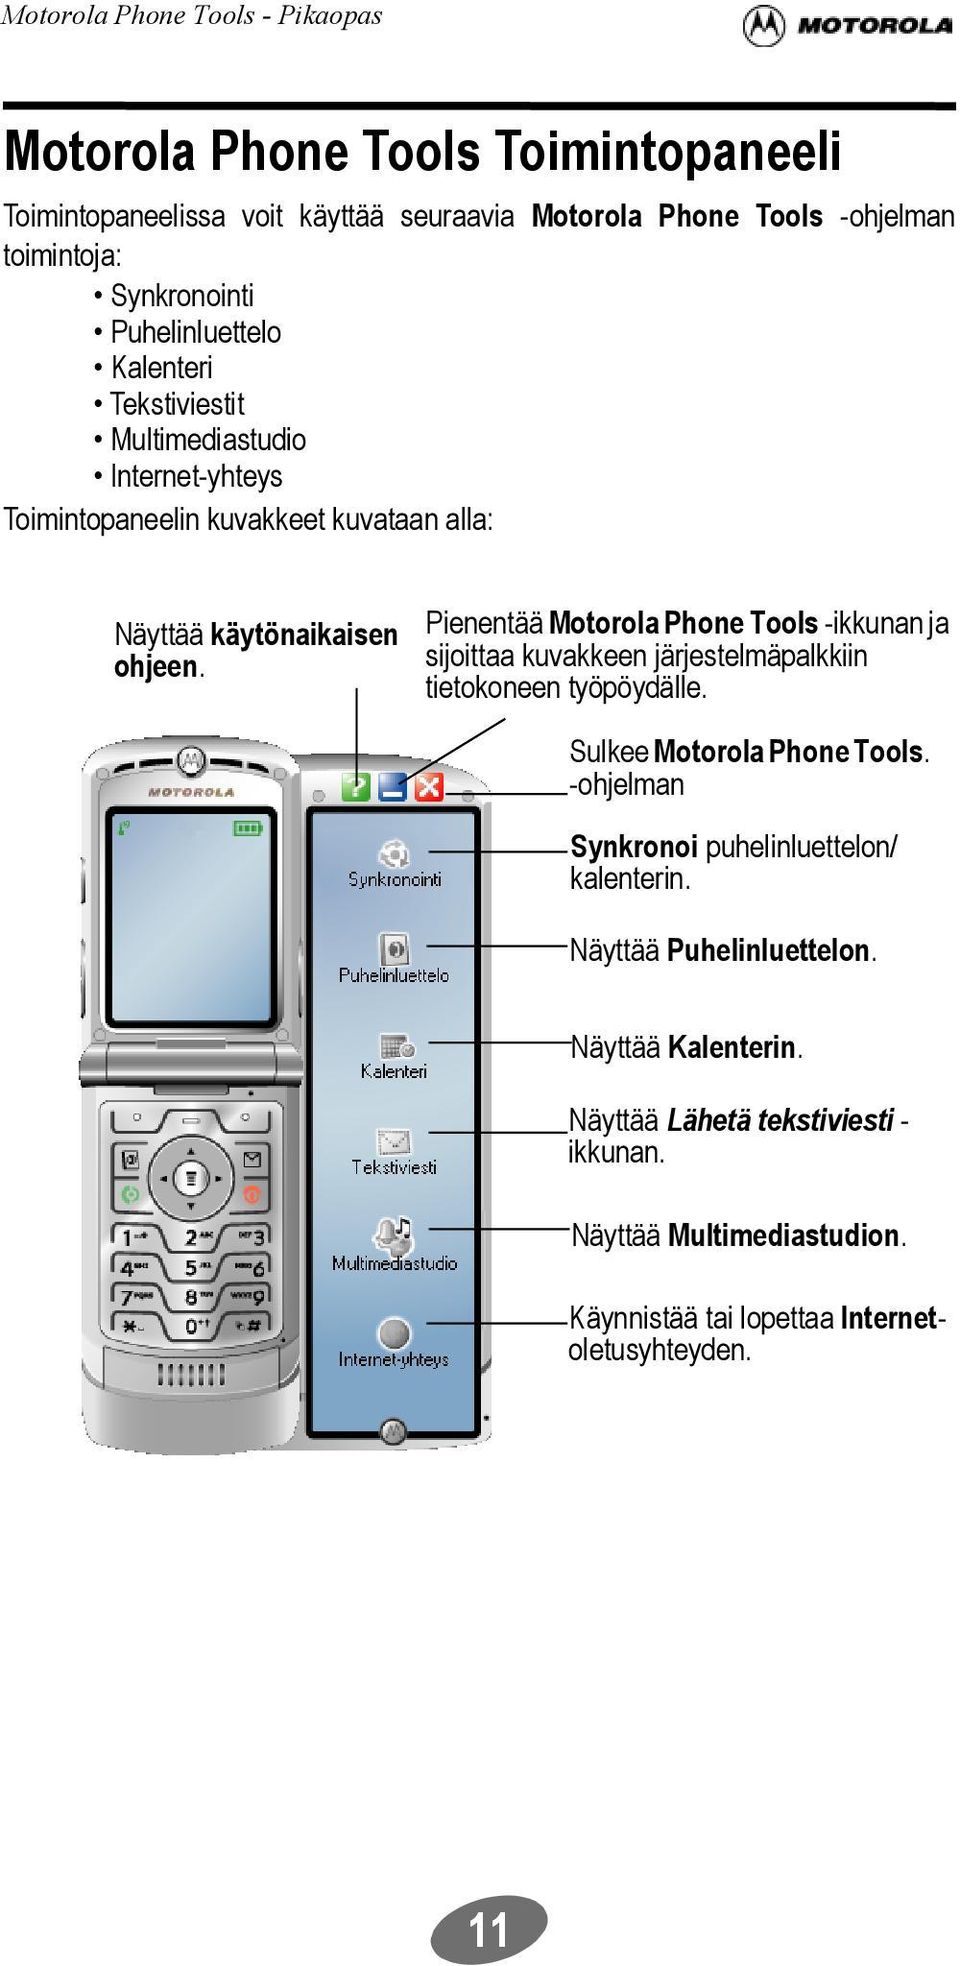 Pienentää Motorola Phone Tools -ikkunan ja sijoittaa kuvakkeen järjestelmäpalkkiin tietokoneen työpöydälle. Sulkee Motorola Phone Tools.